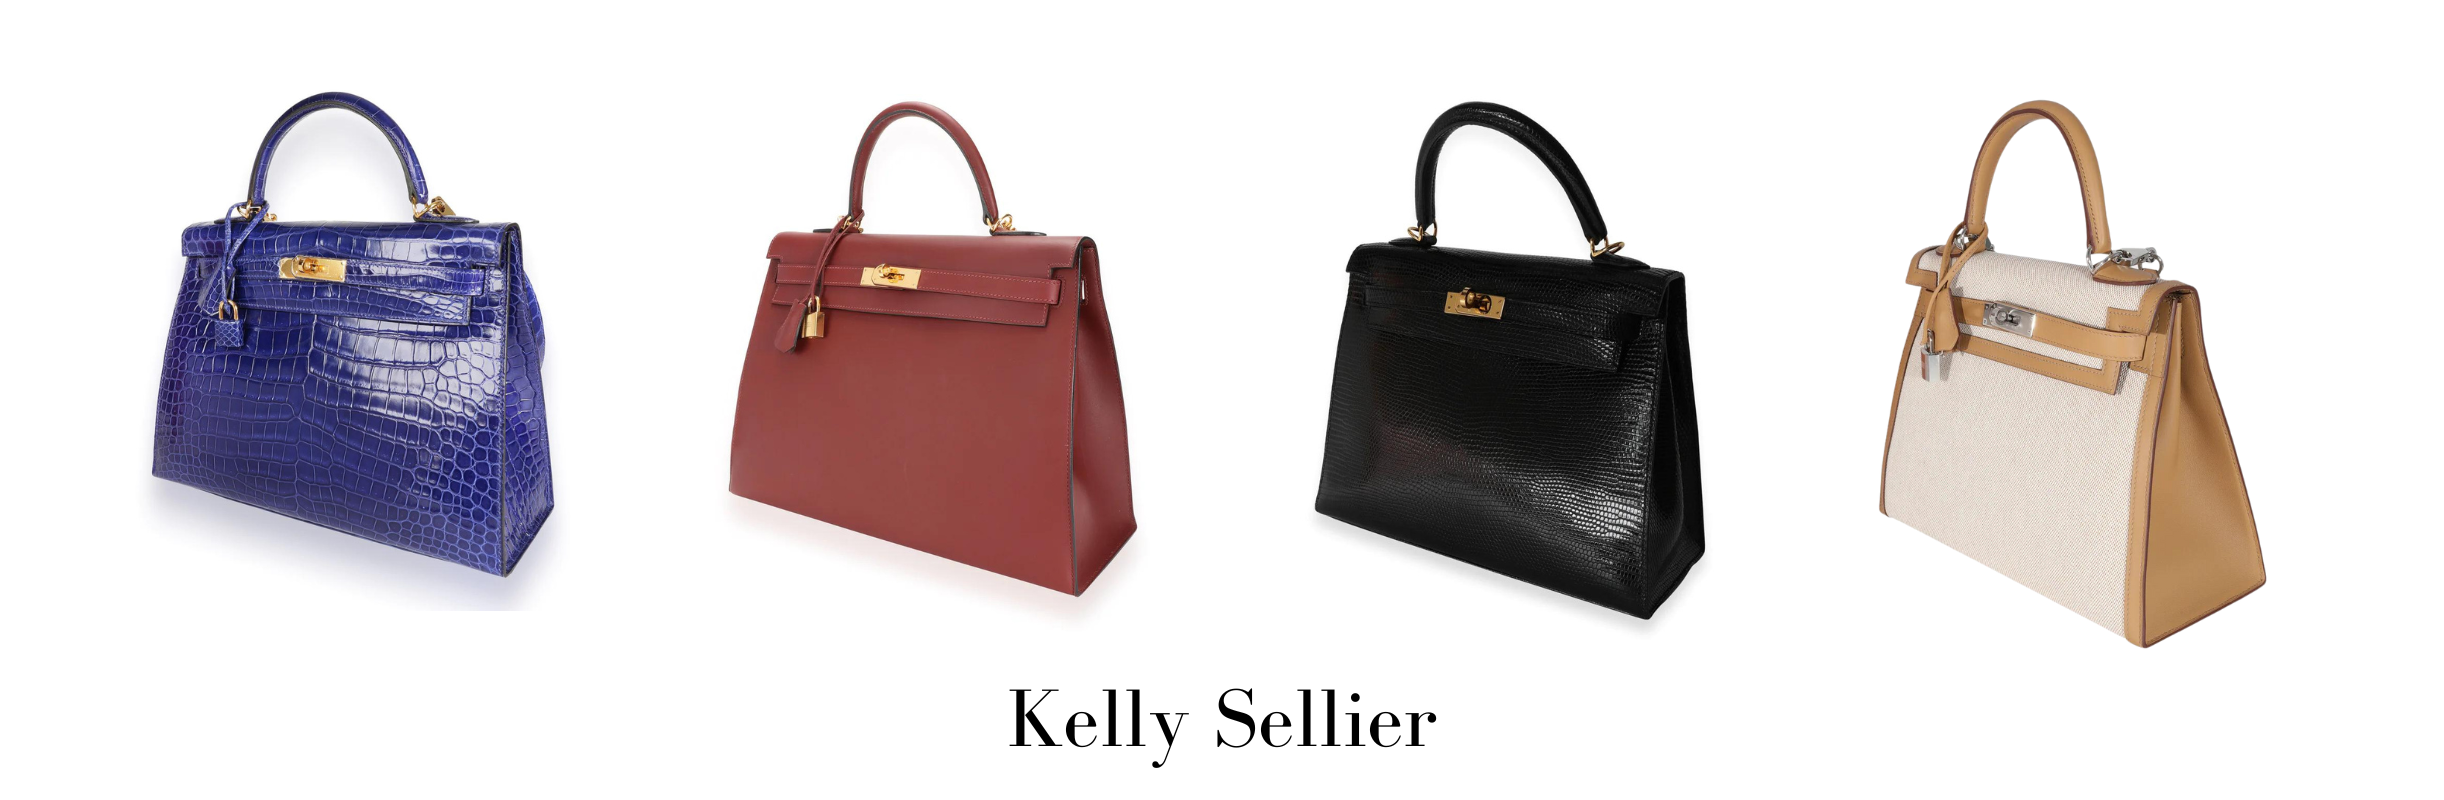 Kelly Sellier buy